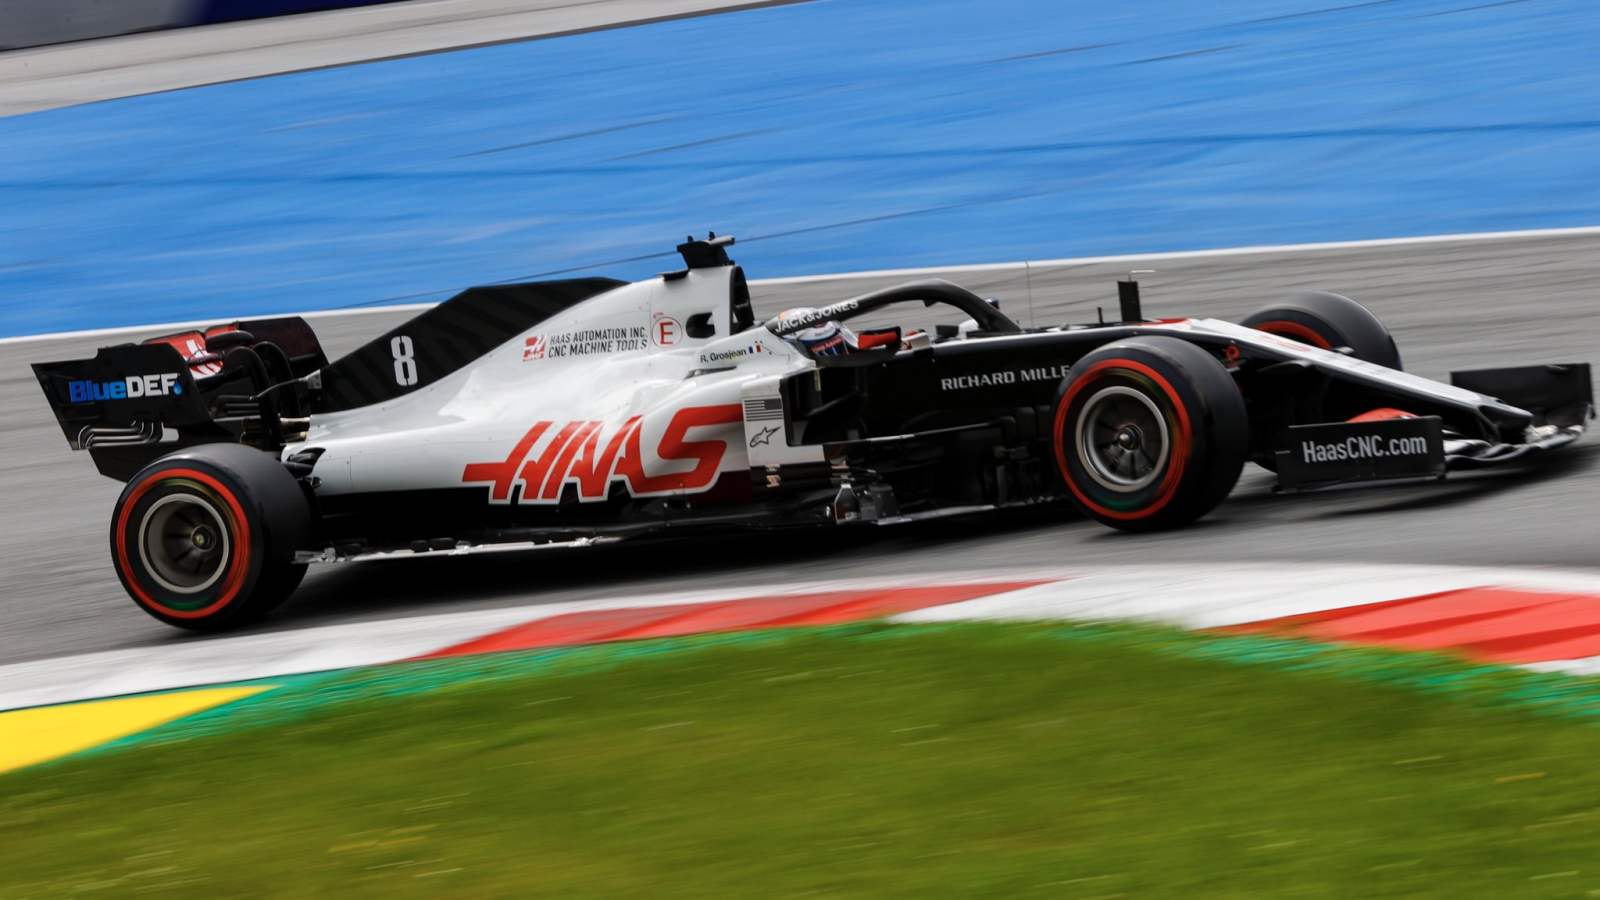 A Haas continuou na parte do fim do grid. Magnussen ficou em 15º